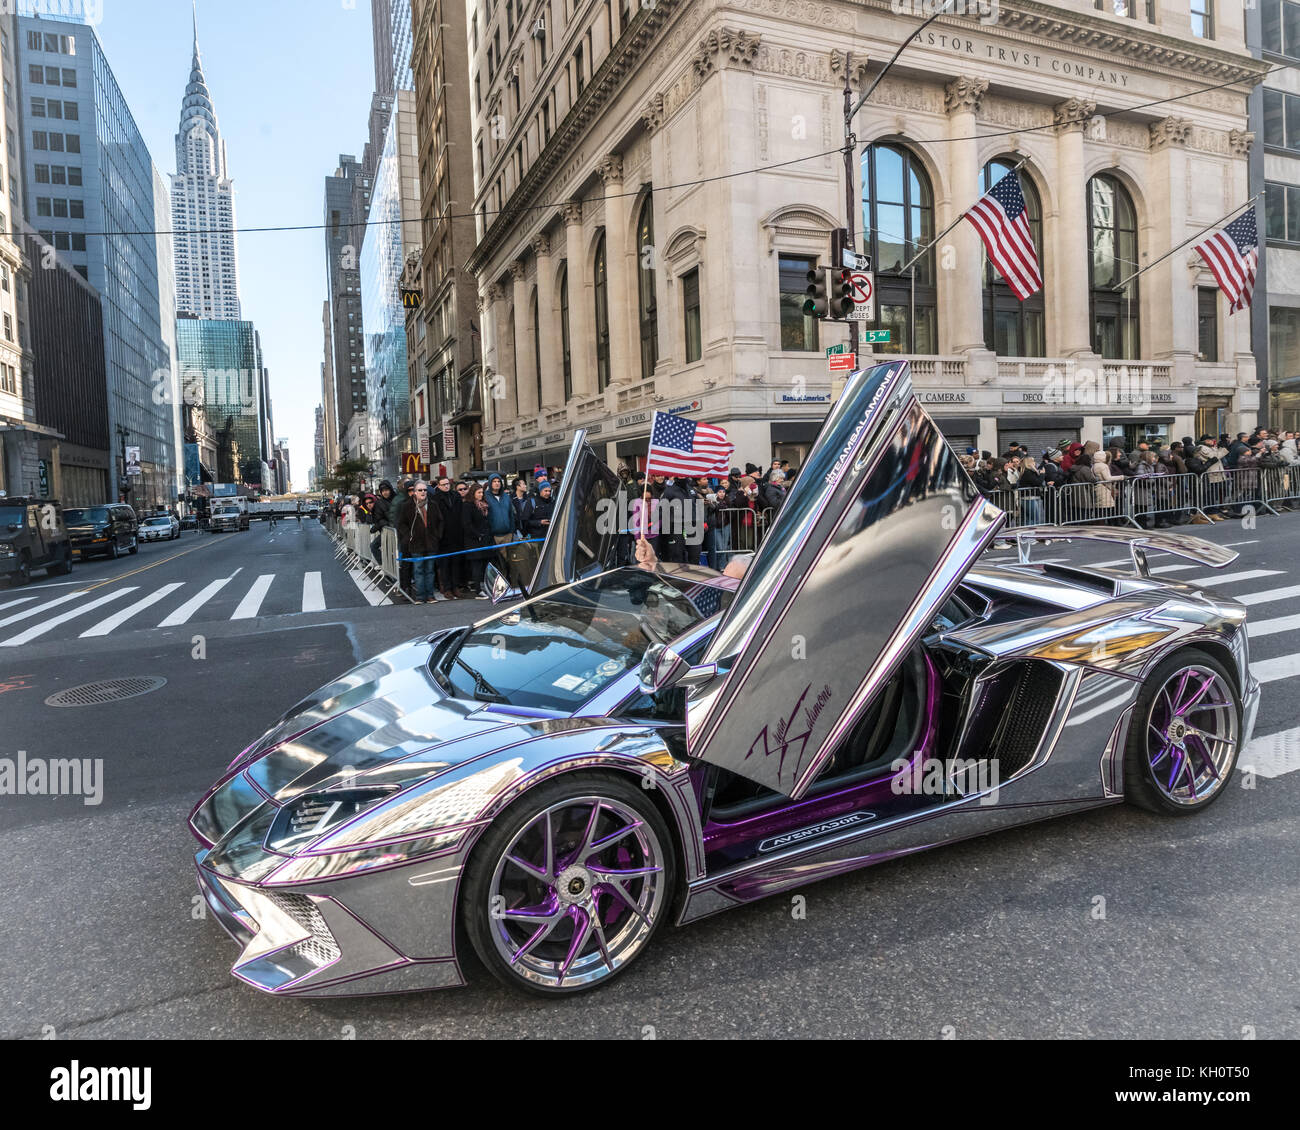 New York, USA, 11. Nov 2017. Ein Lamborghini Aventador Sportwagen fährt langsam durch die New Yorker Fifth Avenue während des Veterans Day Parade 2017. Über 5000 Autos von diesem Modell wurden in Italien hergestellt, mit einem Kostenaufwand von etwa USD 400.000. Foto von Enrique Ufer/Alamy leben Nachrichten Stockfoto